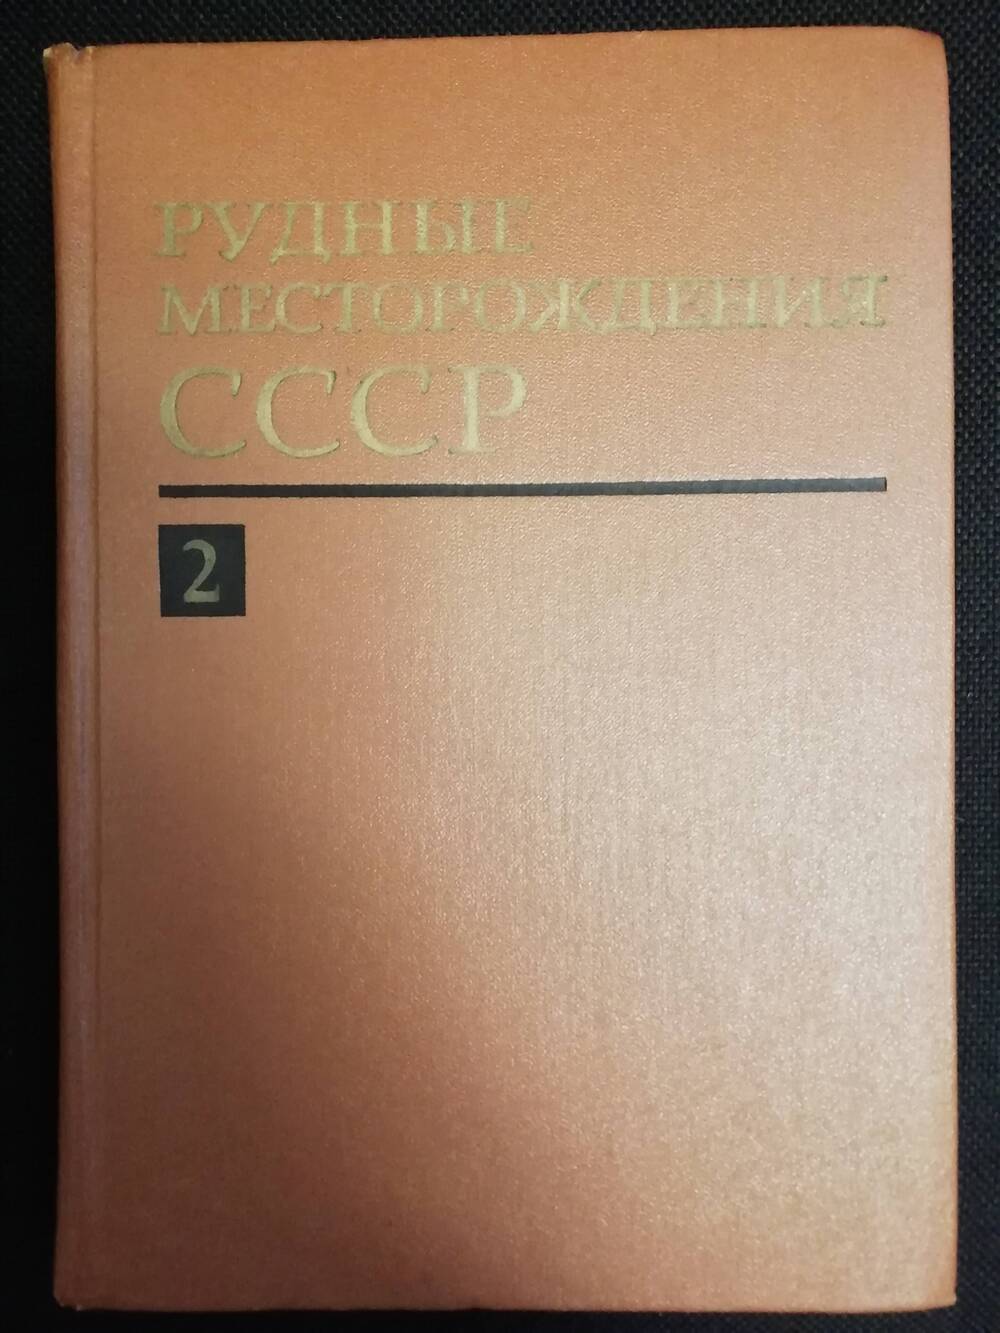 Рудные месторождения СССР. Том 2. Учебное пособие.